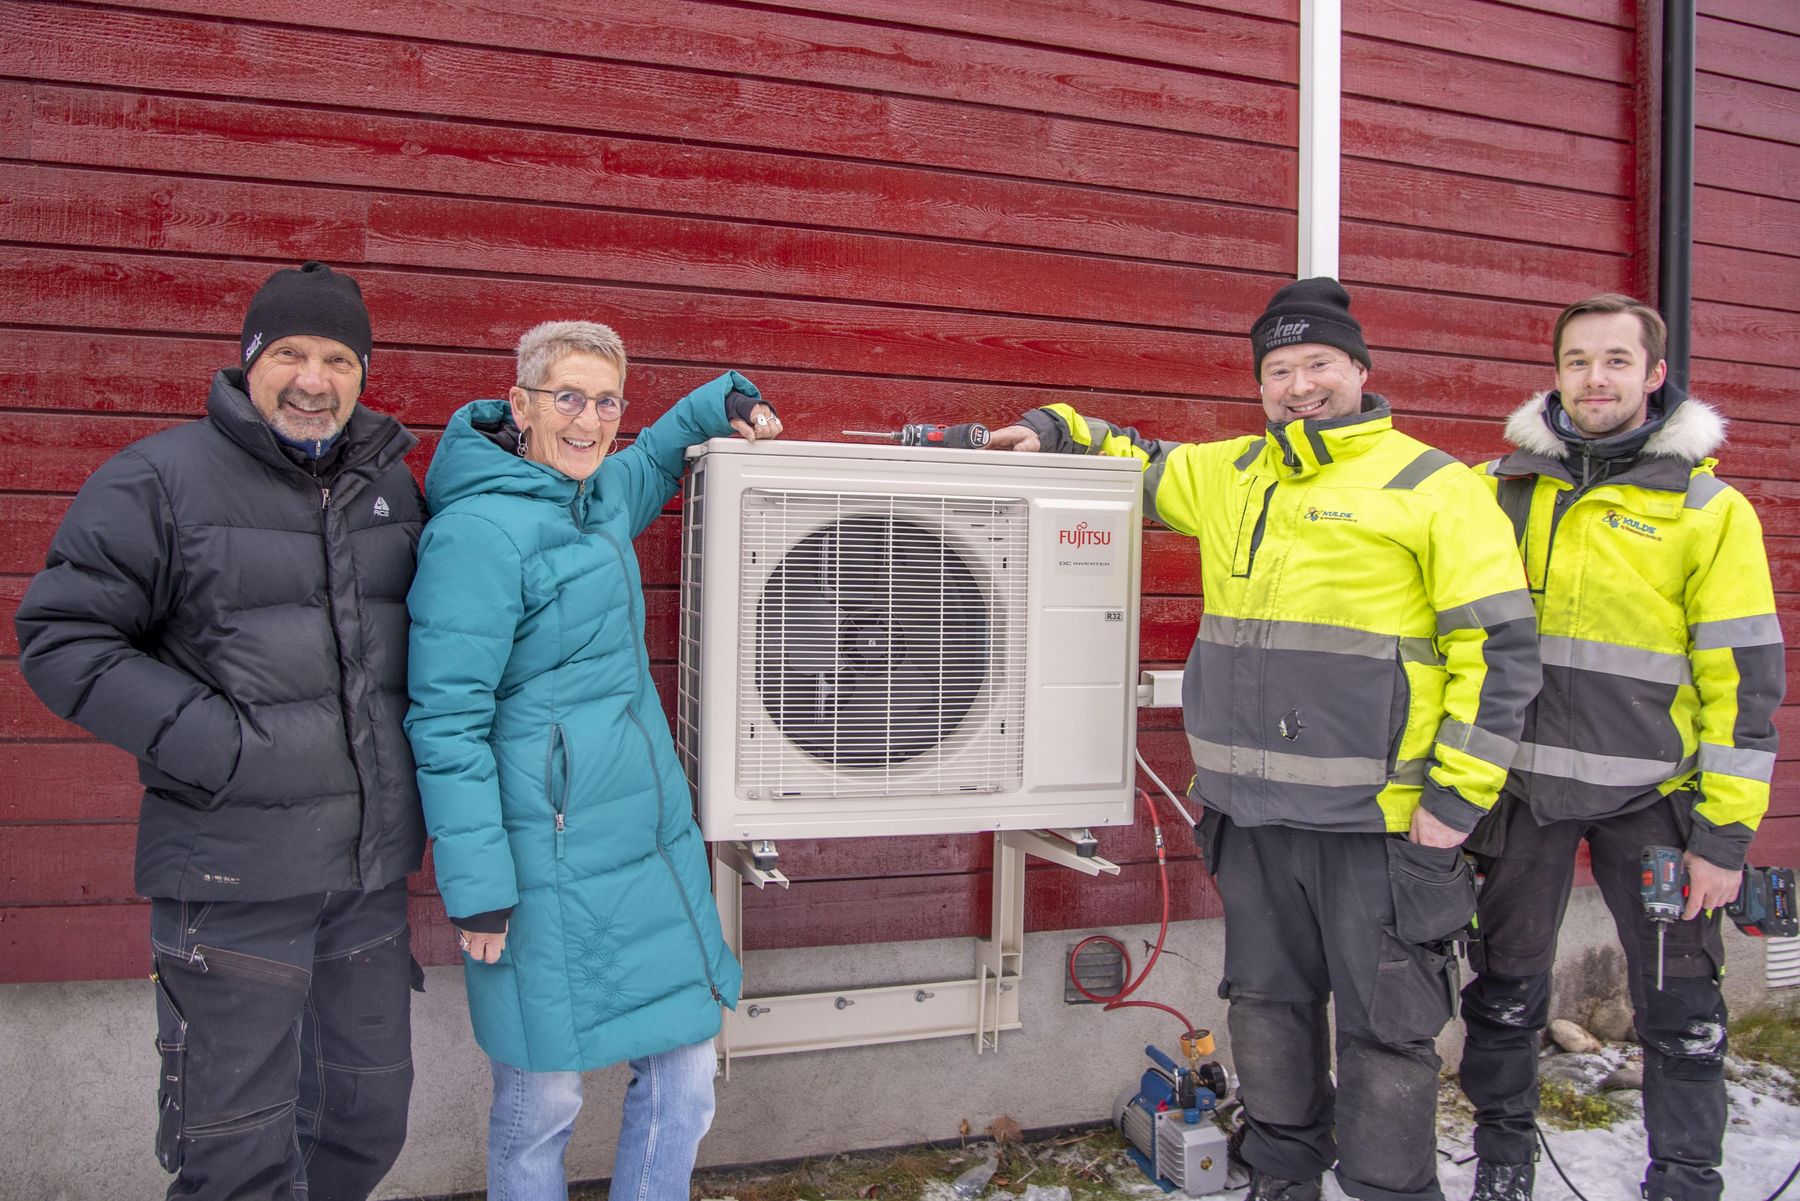 Ekteparet Viktor Johnsen og Britt Søvik er storfornøyd med å ha fått en splitter ny Fujitsu Norgespumpe 6.4. Her med montørene fra Kulde og Varmepumpe Service AS, Raymond Ratama og Nils Thomas Aronsen. ​​​​‌﻿‍﻿​‍​‍‌‍﻿﻿‌﻿​‍‌‍‍‌‌‍‌﻿‌‍‍‌‌‍﻿‍​‍​‍​﻿‍‍​‍​‍‌﻿​﻿‌‍​‌‌‍﻿‍‌‍‍‌‌﻿‌​‌﻿‍‌​‍﻿‍‌‍‍‌‌‍﻿﻿​‍​‍​‍﻿​​‍​‍‌‍‍​‌﻿​‍‌‍‌‌‌‍‌‍​‍​‍​﻿‍‍​‍​‍‌‍‍​‌﻿‌​‌﻿‌​‌﻿​​‌﻿​﻿​﻿‍‍​‍﻿﻿​‍﻿﻿‌‍‍‌‌﻿​﻿‌‍‍​‌‍​‌‌﻿‌‍‌﻿​﻿‌‍‍﻿‌﻿​‍‌‍​‌‌‍‌‍‌﻿‌​​‍﻿‍‌﻿​﻿‌‍​‌‌‍﻿‍‌‍‍‌‌﻿‌​‌﻿‍‌​‍﻿‍‌﻿​﻿‌﻿‌​‌﻿‌‌‌‍‌​‌‍‍‌‌‍﻿﻿​‍﻿﻿‌‍‍‌‌‍﻿‍‌﻿‌​‌‍‌‌‌‍﻿‍‌﻿‌​​‍﻿﻿‌‍‌‌‌‍‌​‌‍‍‌‌﻿‌​​‍﻿﻿‌‍﻿‌‌‍﻿﻿‌‍‌​‌‍‌‌​﻿﻿‌‌﻿​​‌﻿​‍‌‍‌‌‌﻿​﻿‌‍‌‌‌‍﻿‍‌﻿‌​‌‍​‌‌﻿‌​‌‍‍‌‌‍﻿﻿‌‍﻿‍​﻿‍﻿‌‍‍‌‌‍‌​​﻿﻿‌‌‍‌‌​﻿‌‍‌‍‌​​﻿​﻿‌‍​‌‌‍​﻿​﻿​‍‌‍​﻿​‍﻿‌‌‍​‌​﻿‌‌​﻿‌‌​﻿‌​​‍﻿‌​﻿‌​‌‍​‍‌‍​﻿​﻿‌‍​‍﻿‌​﻿‍‌​﻿​‌‌‍​﻿​﻿​‍​‍﻿‌​﻿‌​‌‍‌‌‌‍‌‌‌‍​﻿‌‍‌‌‌‍‌​‌‍​‌​﻿‌‍​﻿‌‍‌‍‌‍‌‍‌​‌‍‌​​﻿‍﻿‌﻿‌​‌﻿‍‌‌﻿​​‌‍‌‌​﻿﻿‌‌‍​‌‌﻿​‍‌﻿‌​‌‍‍‌‌‍​﻿‌‍﻿​‌‍‌‌​﻿‍﻿‌﻿​​‌‍​‌‌﻿‌​‌‍‍​​﻿﻿‌‌‍‍‌‌‍﻿‌‌‍​‌‌‍‌﻿‌‍‌‌​‍﻿‍‌‍​‌‌‍﻿​‌﻿‌​​﻿﻿﻿‌‍​‍‌‍​‌‌﻿​﻿‌‍‌‌‌‌‌‌‌﻿​‍‌‍﻿​​﻿﻿‌‌‍‍​‌﻿‌​‌﻿‌​‌﻿​​‌﻿​﻿​‍‌‌​﻿​﻿‌​​‌​‍‌‌​﻿​‍‌​‌‍​‍‌‌​﻿​‍‌​‌‍‌‍‍‌‌﻿​﻿‌‍‍​‌‍​‌‌﻿‌‍‌﻿​﻿‌‍‍﻿‌﻿​‍‌‍​‌‌‍‌‍‌﻿‌​​‍﻿‍‌﻿​﻿‌‍​‌‌‍﻿‍‌‍‍‌‌﻿‌​‌﻿‍‌​‍﻿‍‌﻿​﻿‌﻿‌​‌﻿‌‌‌‍‌​‌‍‍‌‌‍﻿﻿​‍‌‍‌‍‍‌‌‍‌​​﻿﻿‌‌‍‌‌​﻿‌‍‌‍‌​​﻿​﻿‌‍​‌‌‍​﻿​﻿​‍‌‍​﻿​‍﻿‌‌‍​‌​﻿‌‌​﻿‌‌​﻿‌​​‍﻿‌​﻿‌​‌‍​‍‌‍​﻿​﻿‌‍​‍﻿‌​﻿‍‌​﻿​‌‌‍​﻿​﻿​‍​‍﻿‌​﻿‌​‌‍‌‌‌‍‌‌‌‍​﻿‌‍‌‌‌‍‌​‌‍​‌​﻿‌‍​﻿‌‍‌‍‌‍‌‍‌​‌‍‌​​‍‌‍‌﻿‌​‌﻿‍‌‌﻿​​‌‍‌‌​﻿﻿‌‌‍​‌‌﻿​‍‌﻿‌​‌‍‍‌‌‍​﻿‌‍﻿​‌‍‌‌​‍‌‍‌﻿​​‌‍​‌‌﻿‌​‌‍‍​​﻿﻿‌‌‍‍‌‌‍﻿‌‌‍​‌‌‍‌﻿‌‍‌‌​‍﻿‍‌‍​‌‌‍﻿​‌﻿‌​​‍​‍‌﻿﻿‌